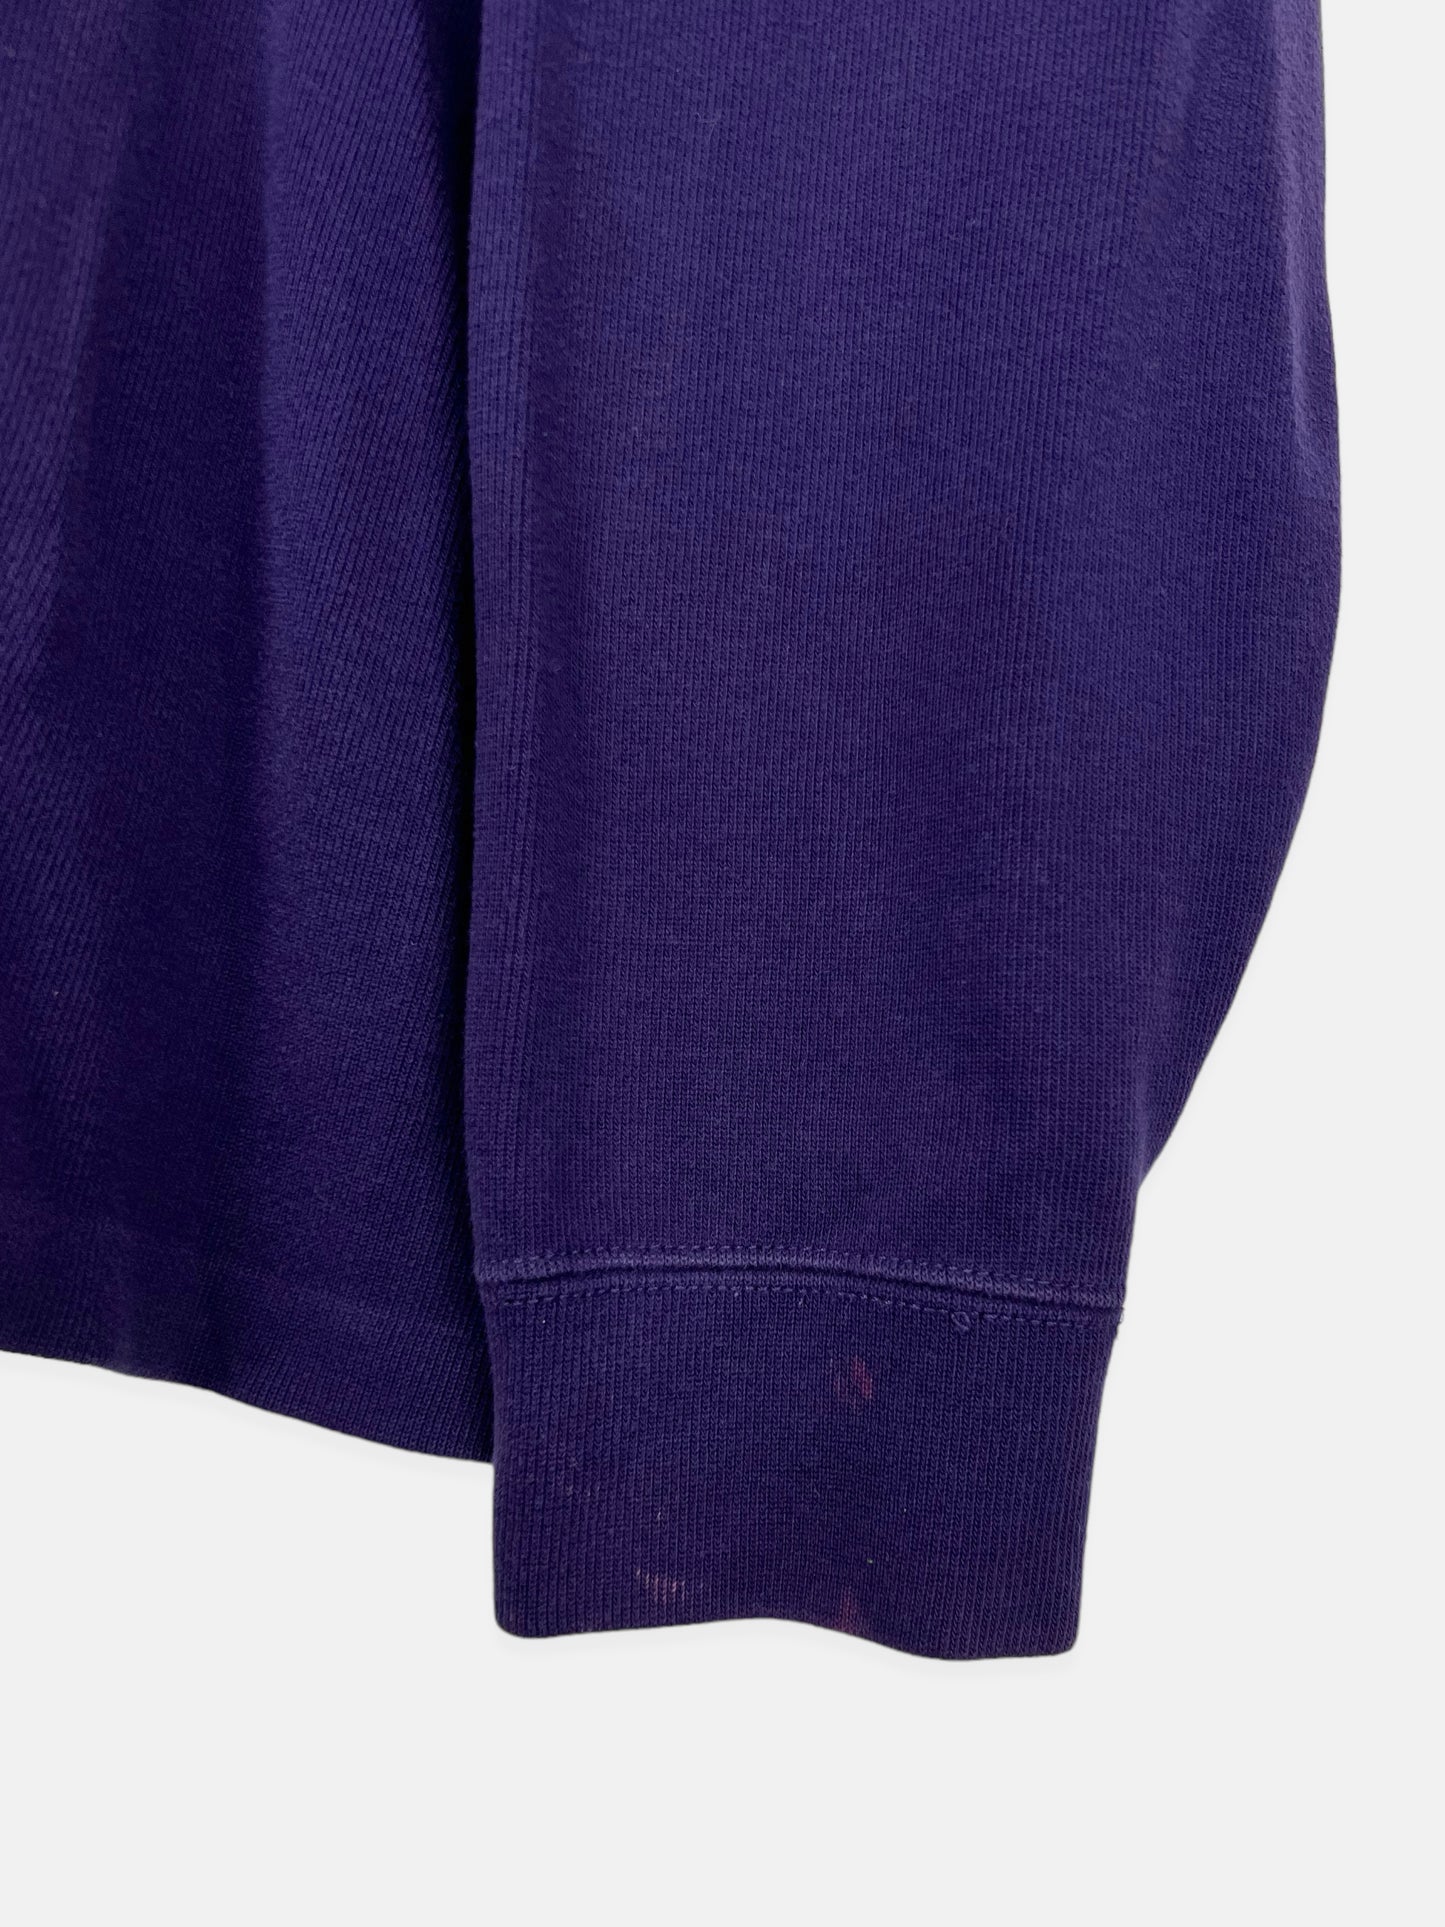 90's Ralph Lauren Embroidered Vintage Quarterzip Sweatshirt Size XL